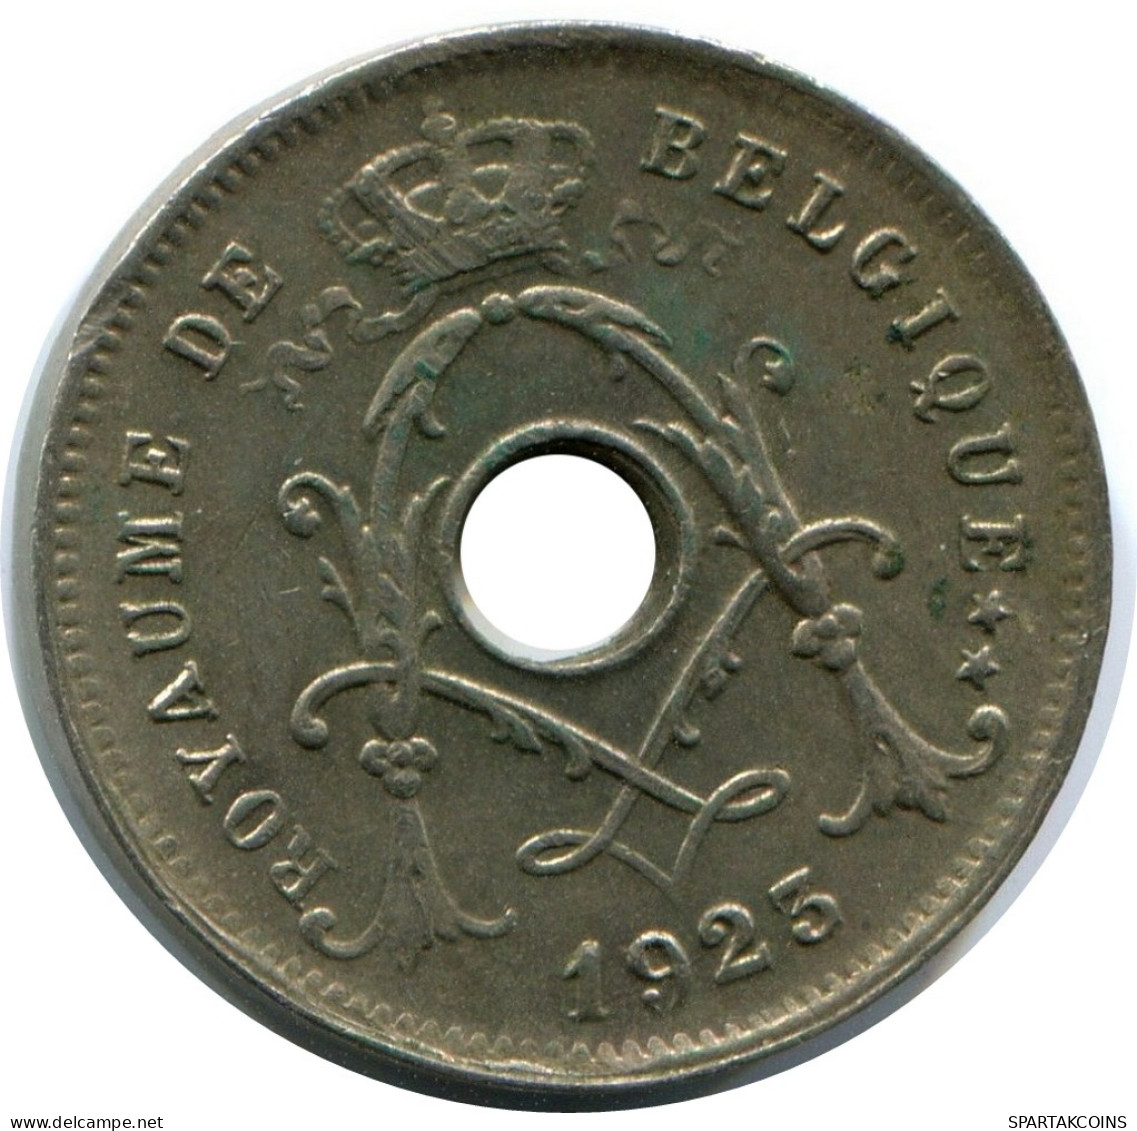 5 CENTIMES 1925 DUTCH Text BELGIUM Coin #AW966.U - 5 Cents